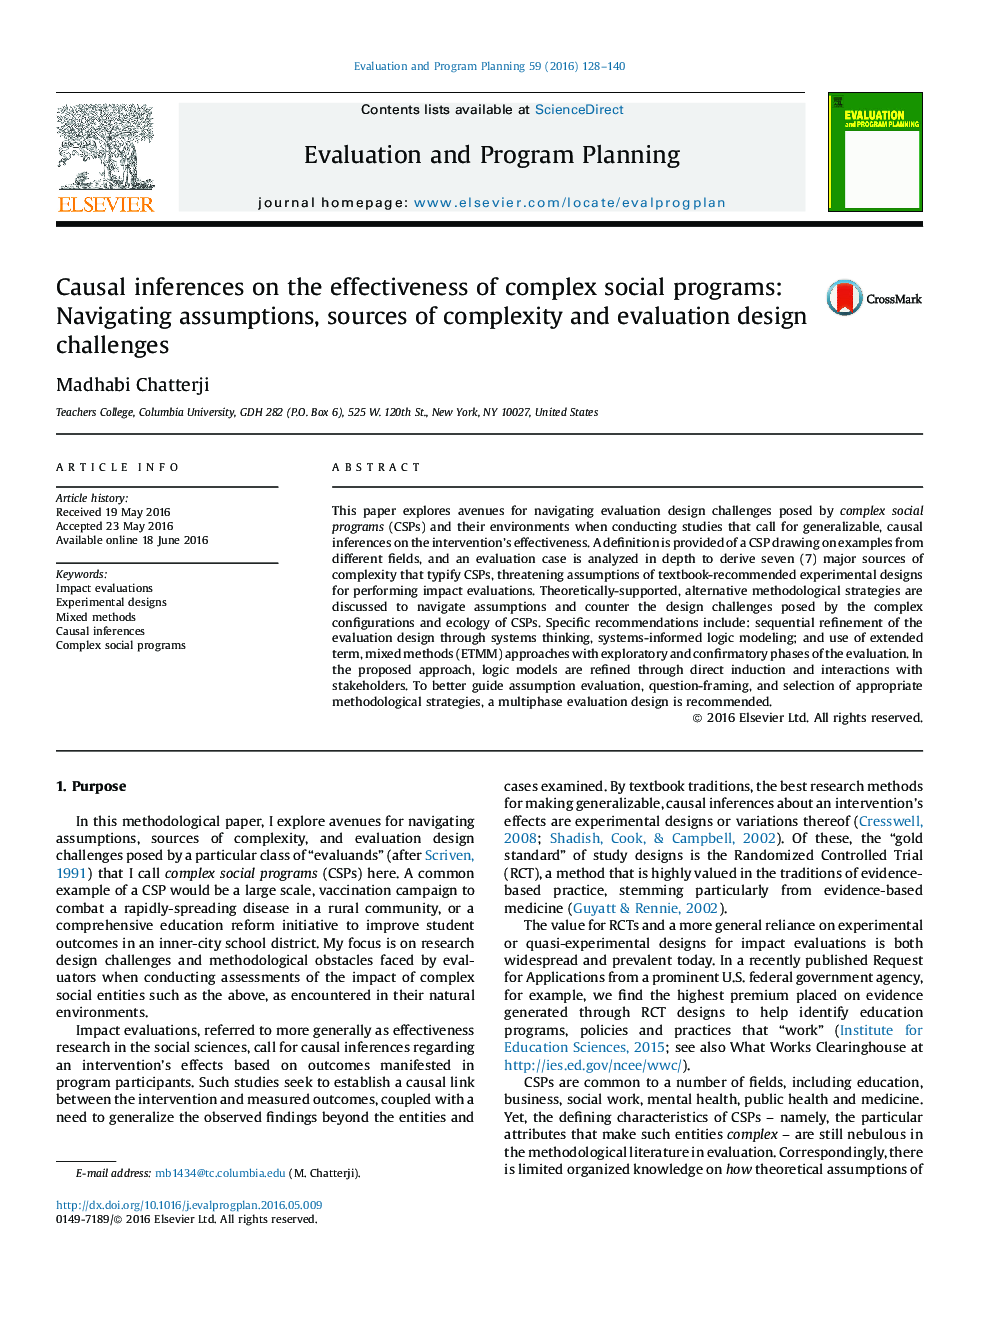 نتیجه گیری های علمی درمورد اثربخشی برنامه های اجتماعی پیچیده: هدایت پیش فرض ها، منابع پیچیدگی و چالش های طراحی ارزیابی 